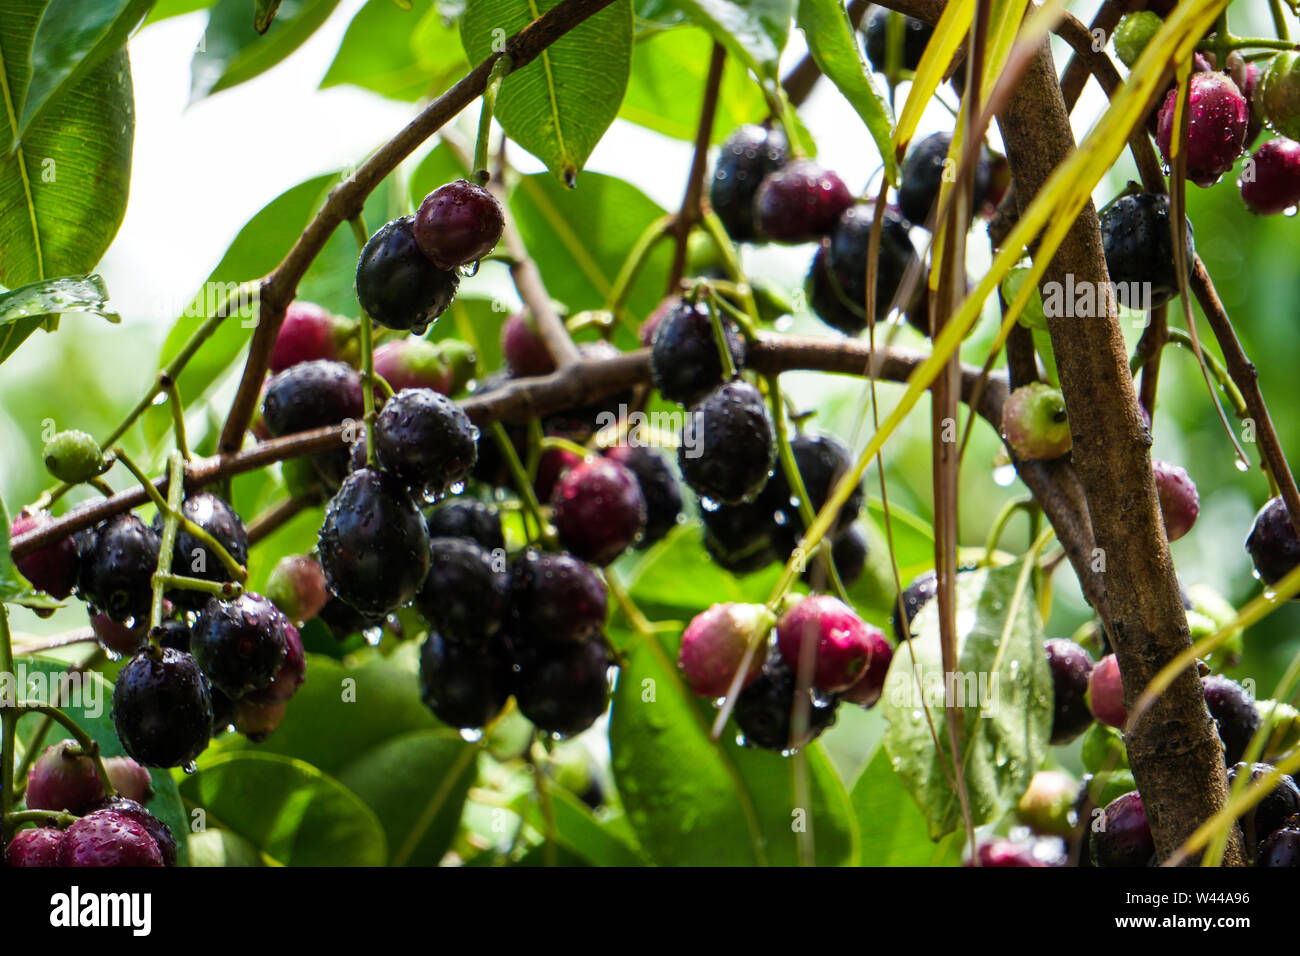 JAMBOLAN PLUM, Jamun Fruit, Syzygium cumini, Black Plum, Java Plum, Black Berry Fruit Plant Stock Photo